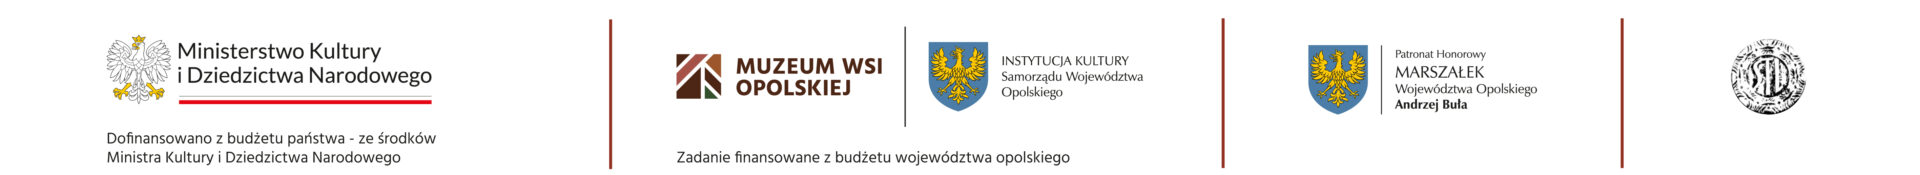 Informacja o dofinansowaniu projektu z budżetu państwa - ze środków Ministra Kultury i Dziedzictwa Narodowego oraz finansowania z budżetu Województwa Opolskiego.